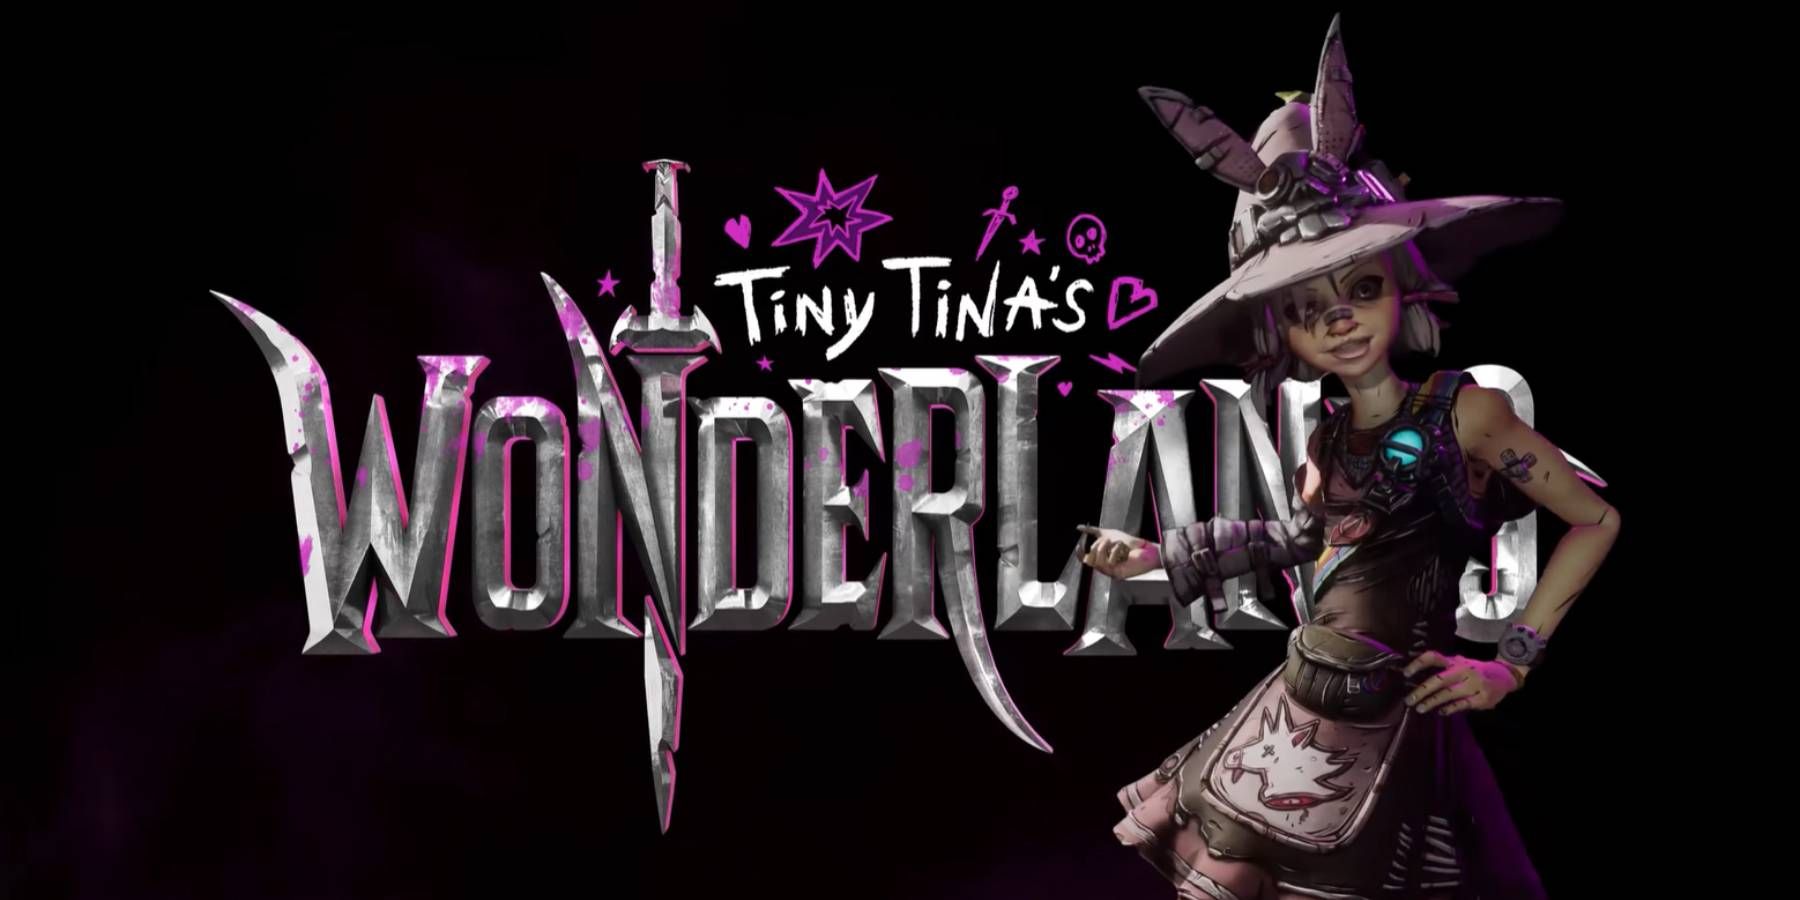 Tiny Tina with the game logo from Tiny Tina's Wonderlands' reveal trailer